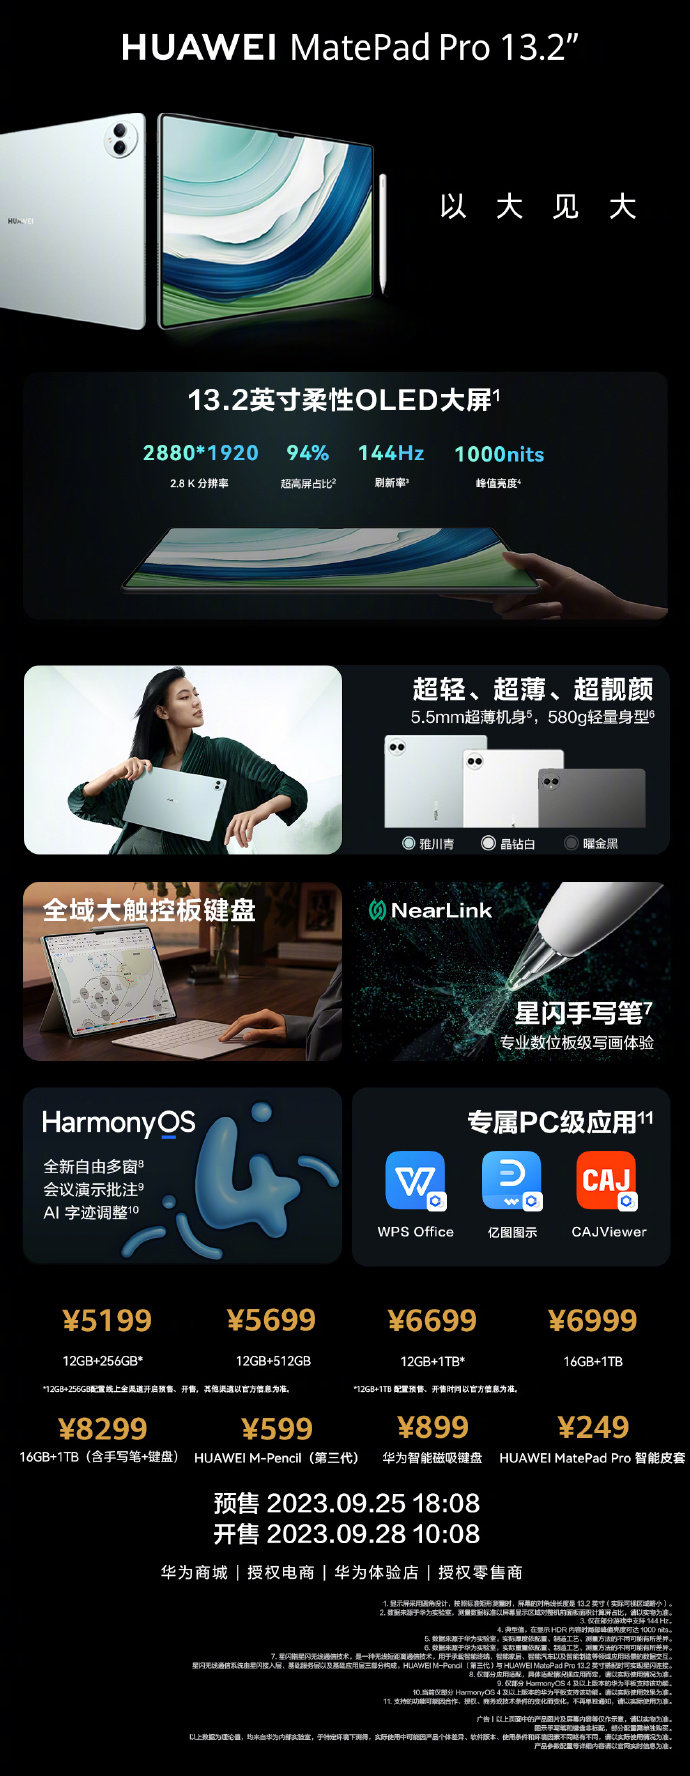 tablet Huawei MatePad Pro 13.2 cena specyfikacja